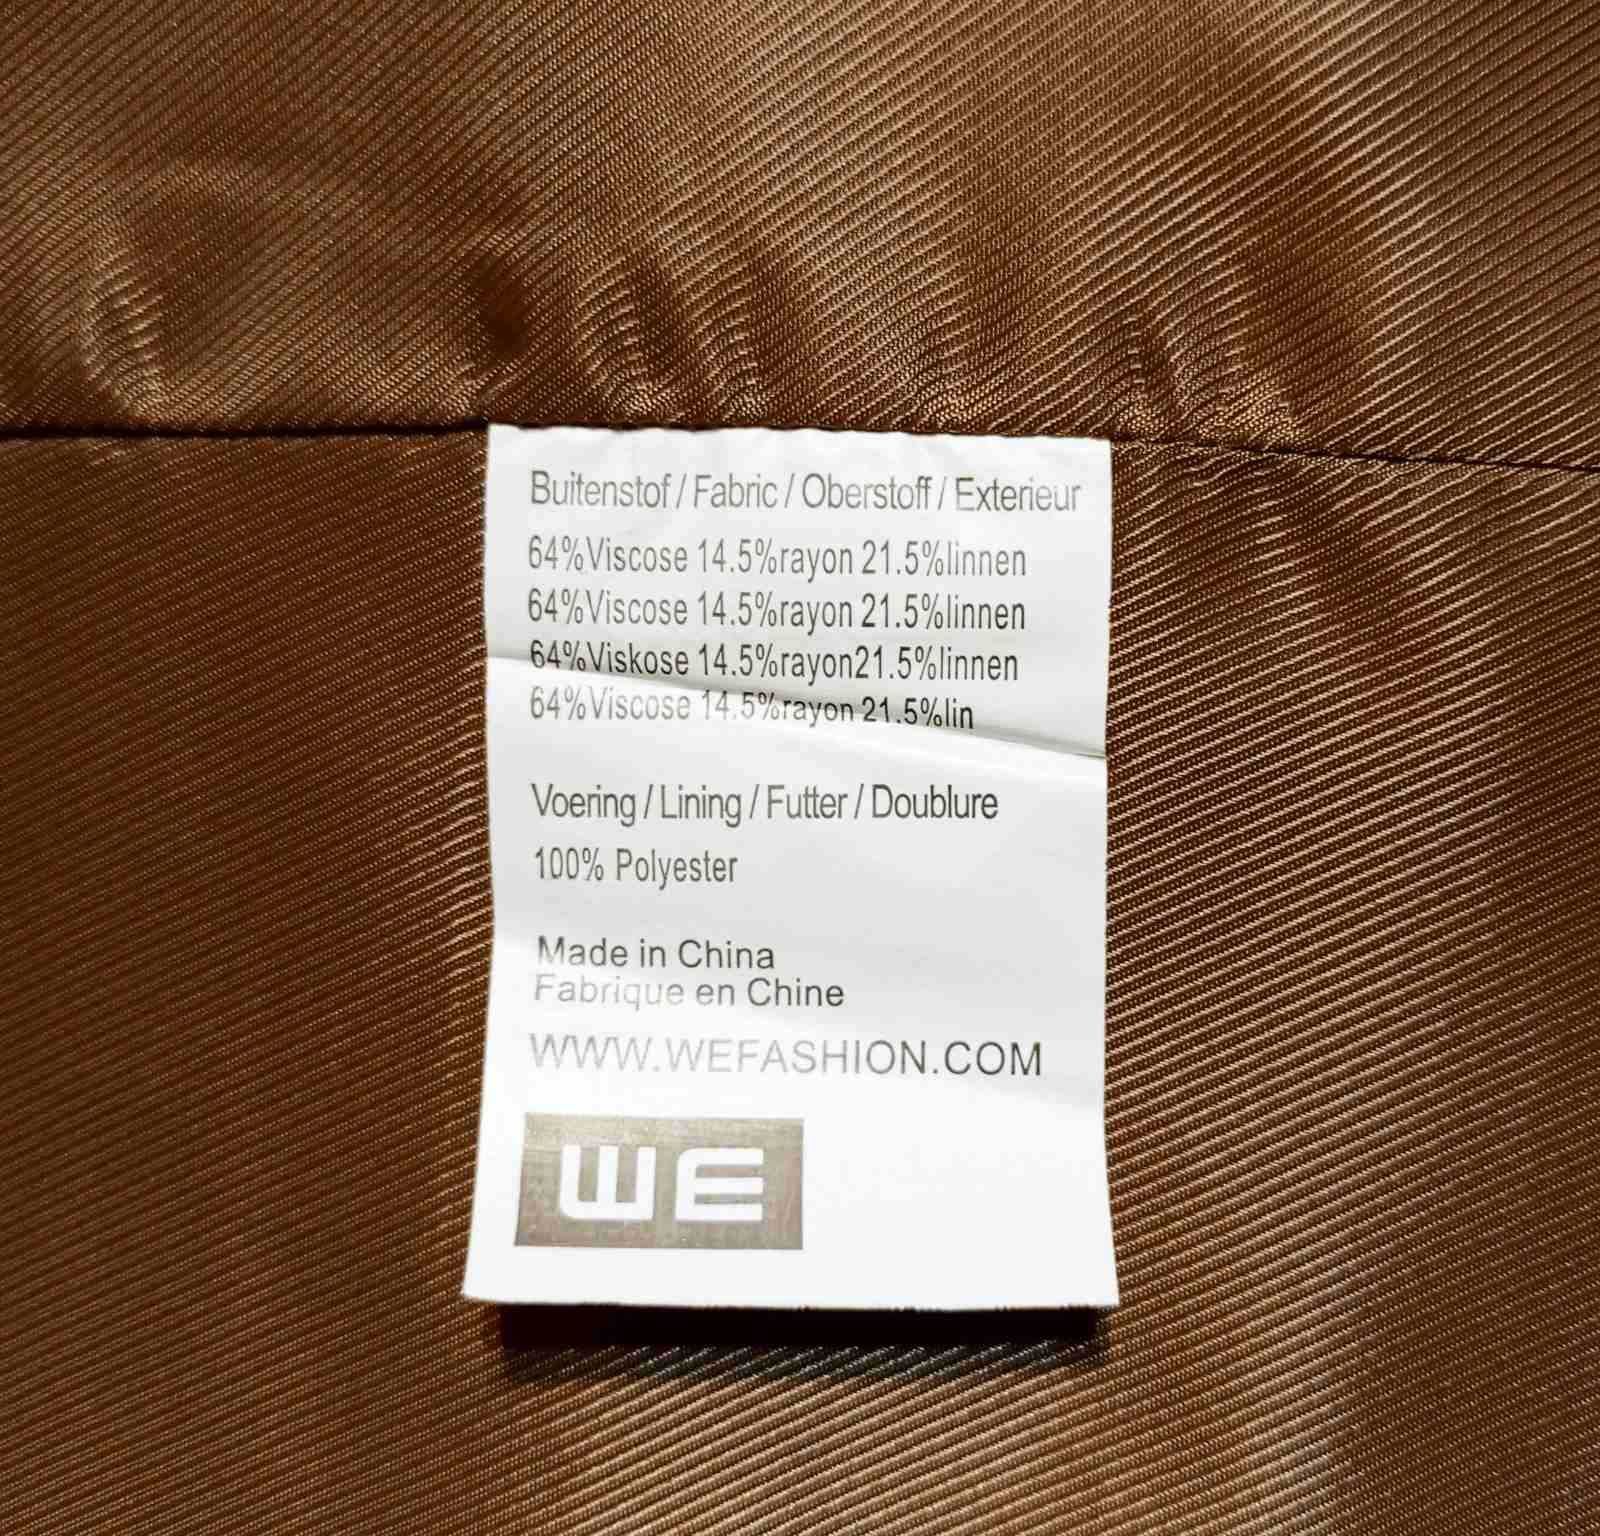 Оригинальная легкая куртка, ветровка, 64% вискозы, ШЕ.